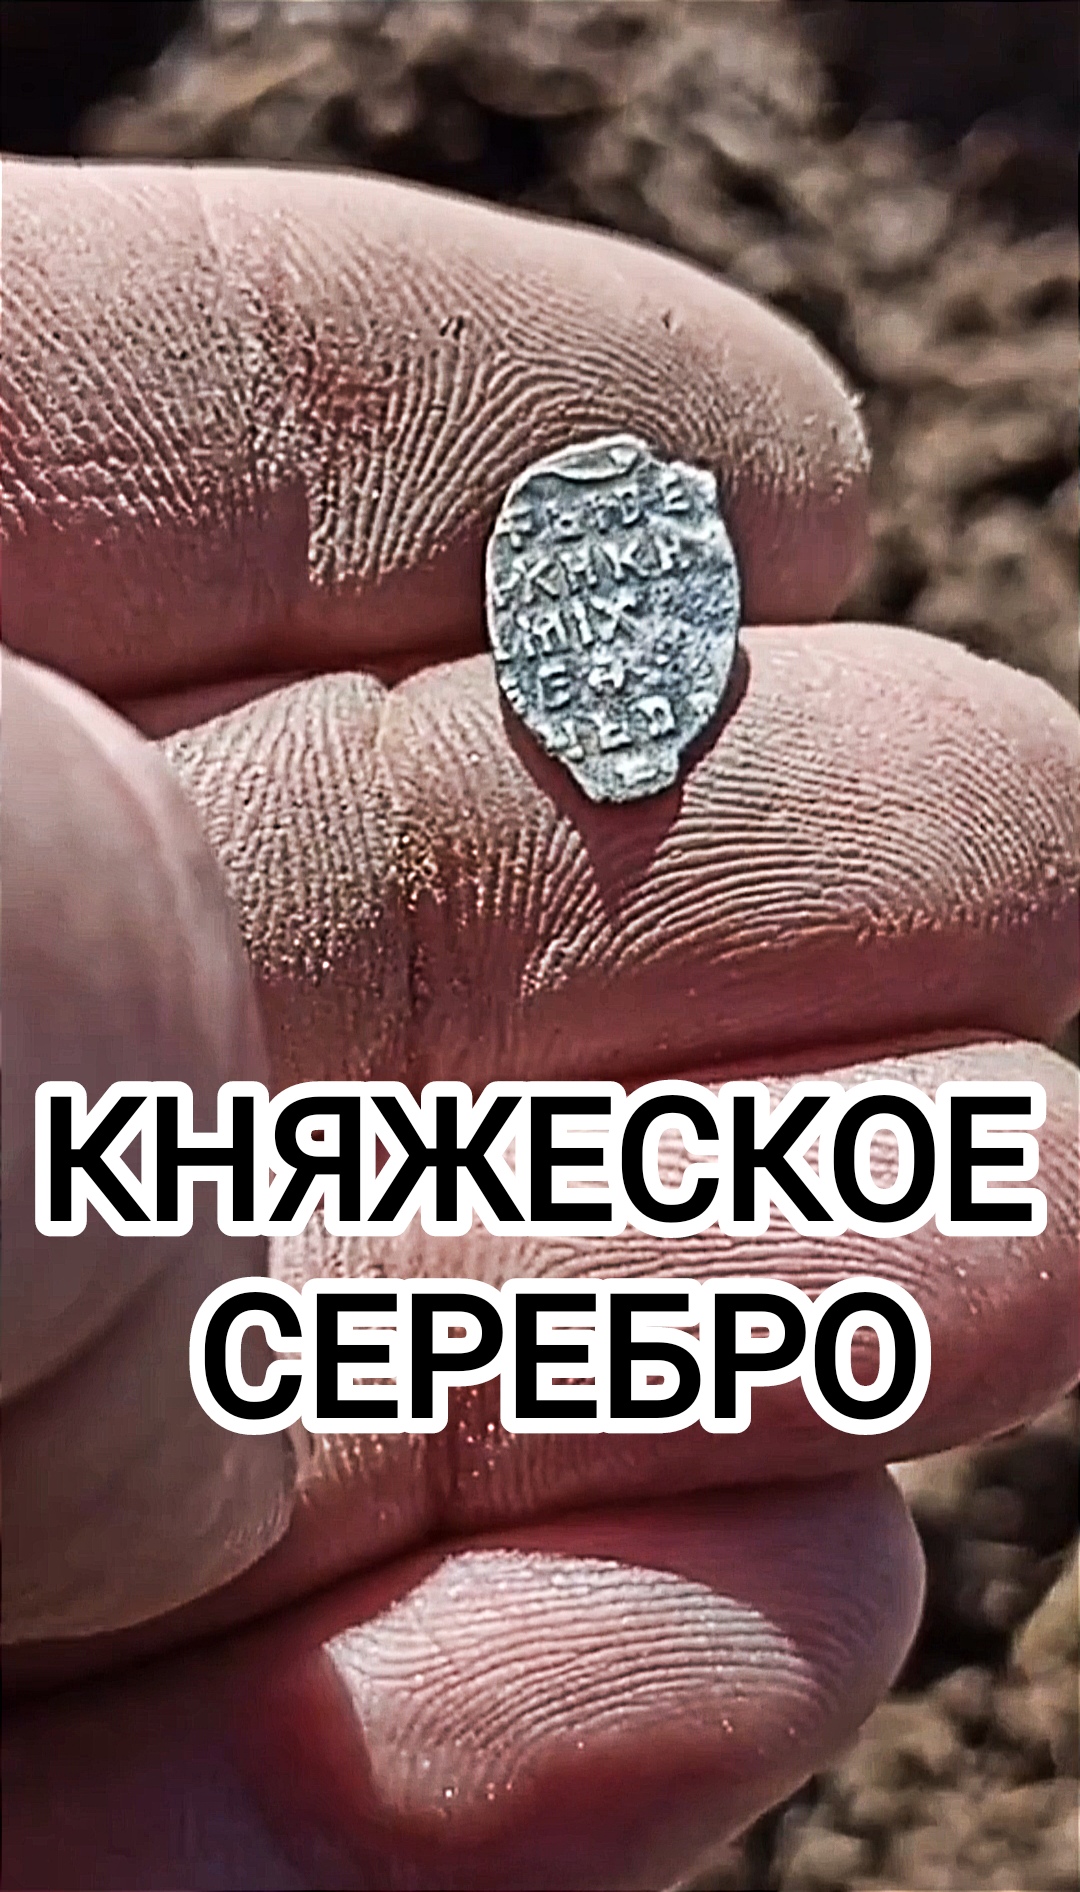 Царское серебро (Чешуя)